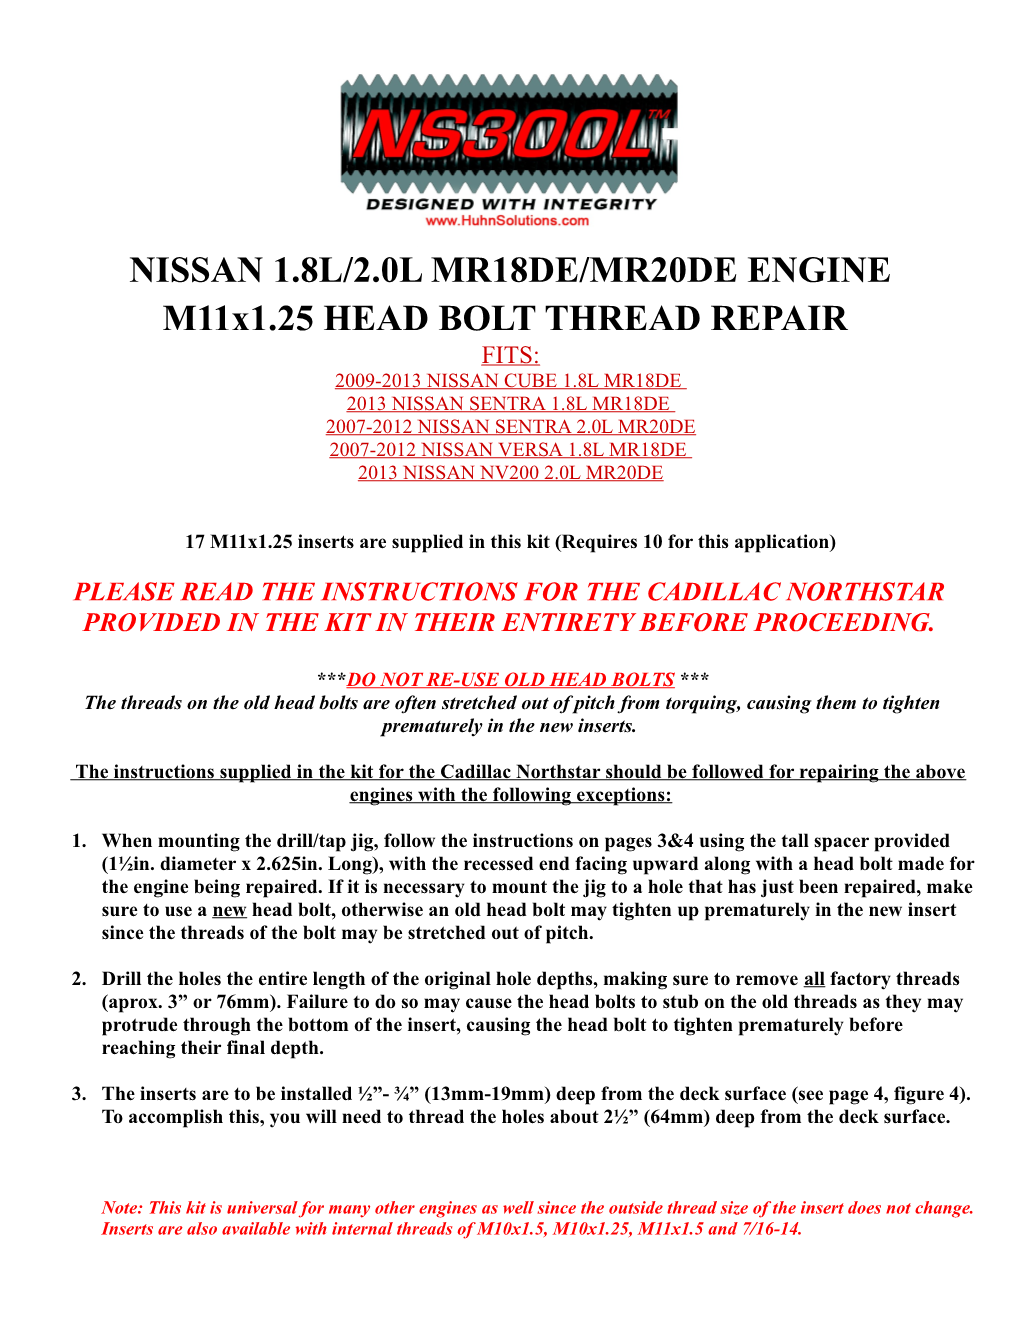 NISSAN 1.8L/2.0L MR18DE/MR20DE ENGINE M11x1.25 HEAD BOLT